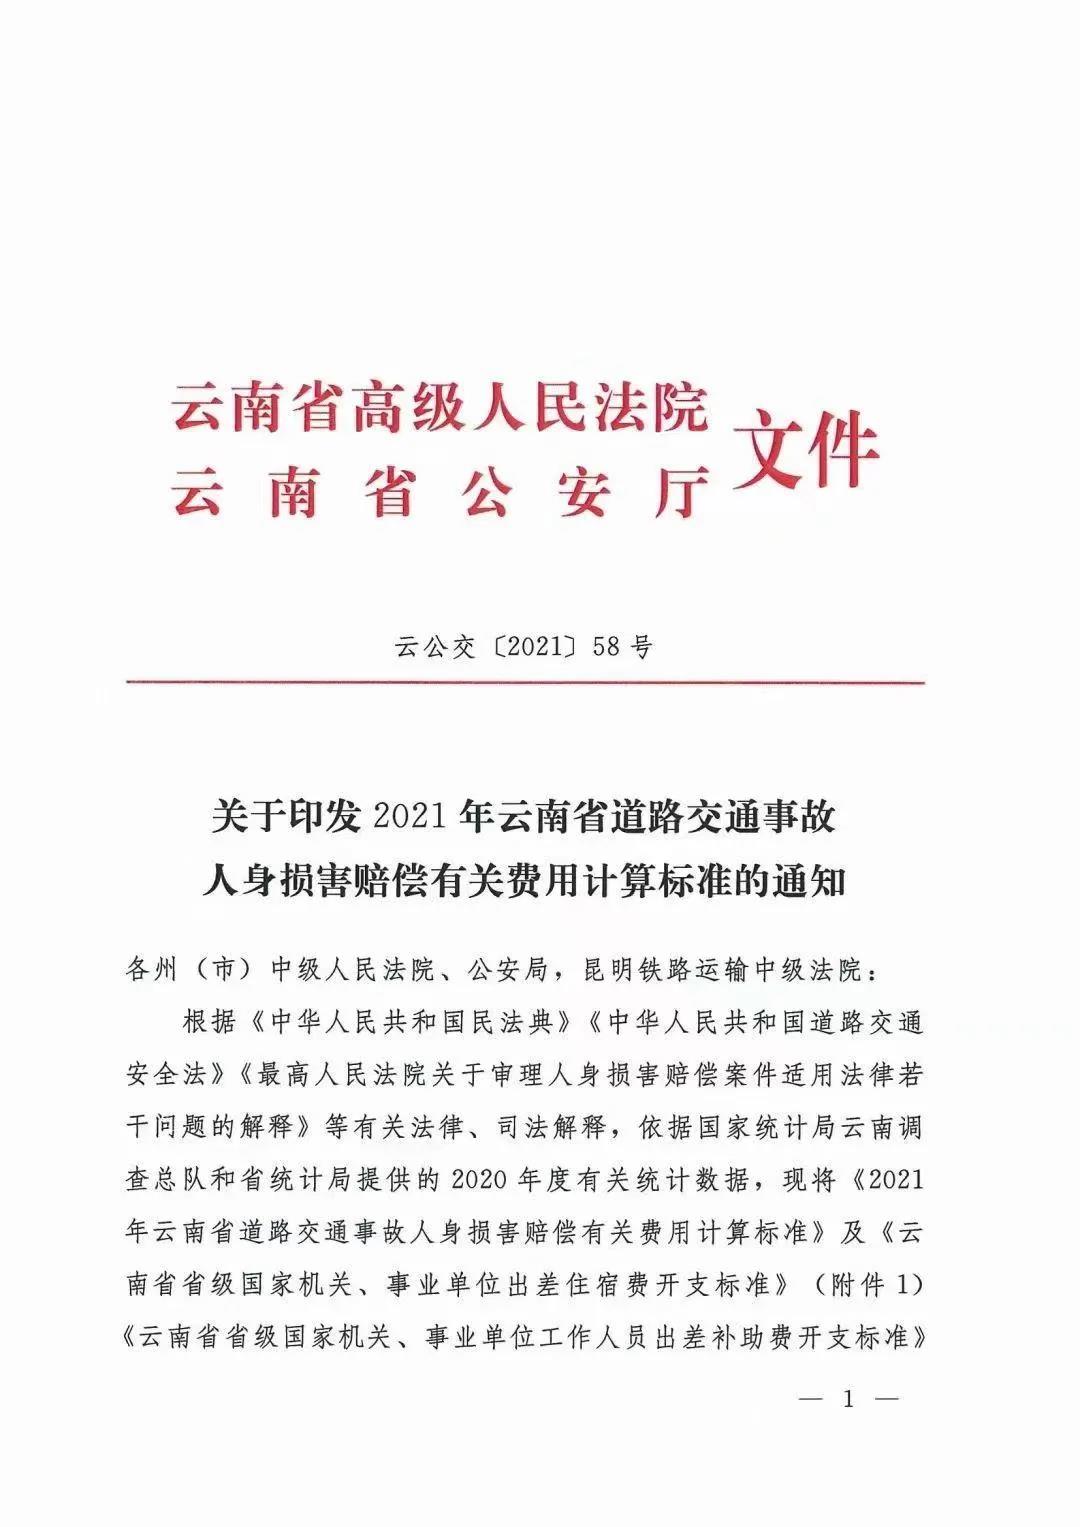 云南省2021年人身损害赔偿标准：云南省高级人民法院 云南省公安厅文件